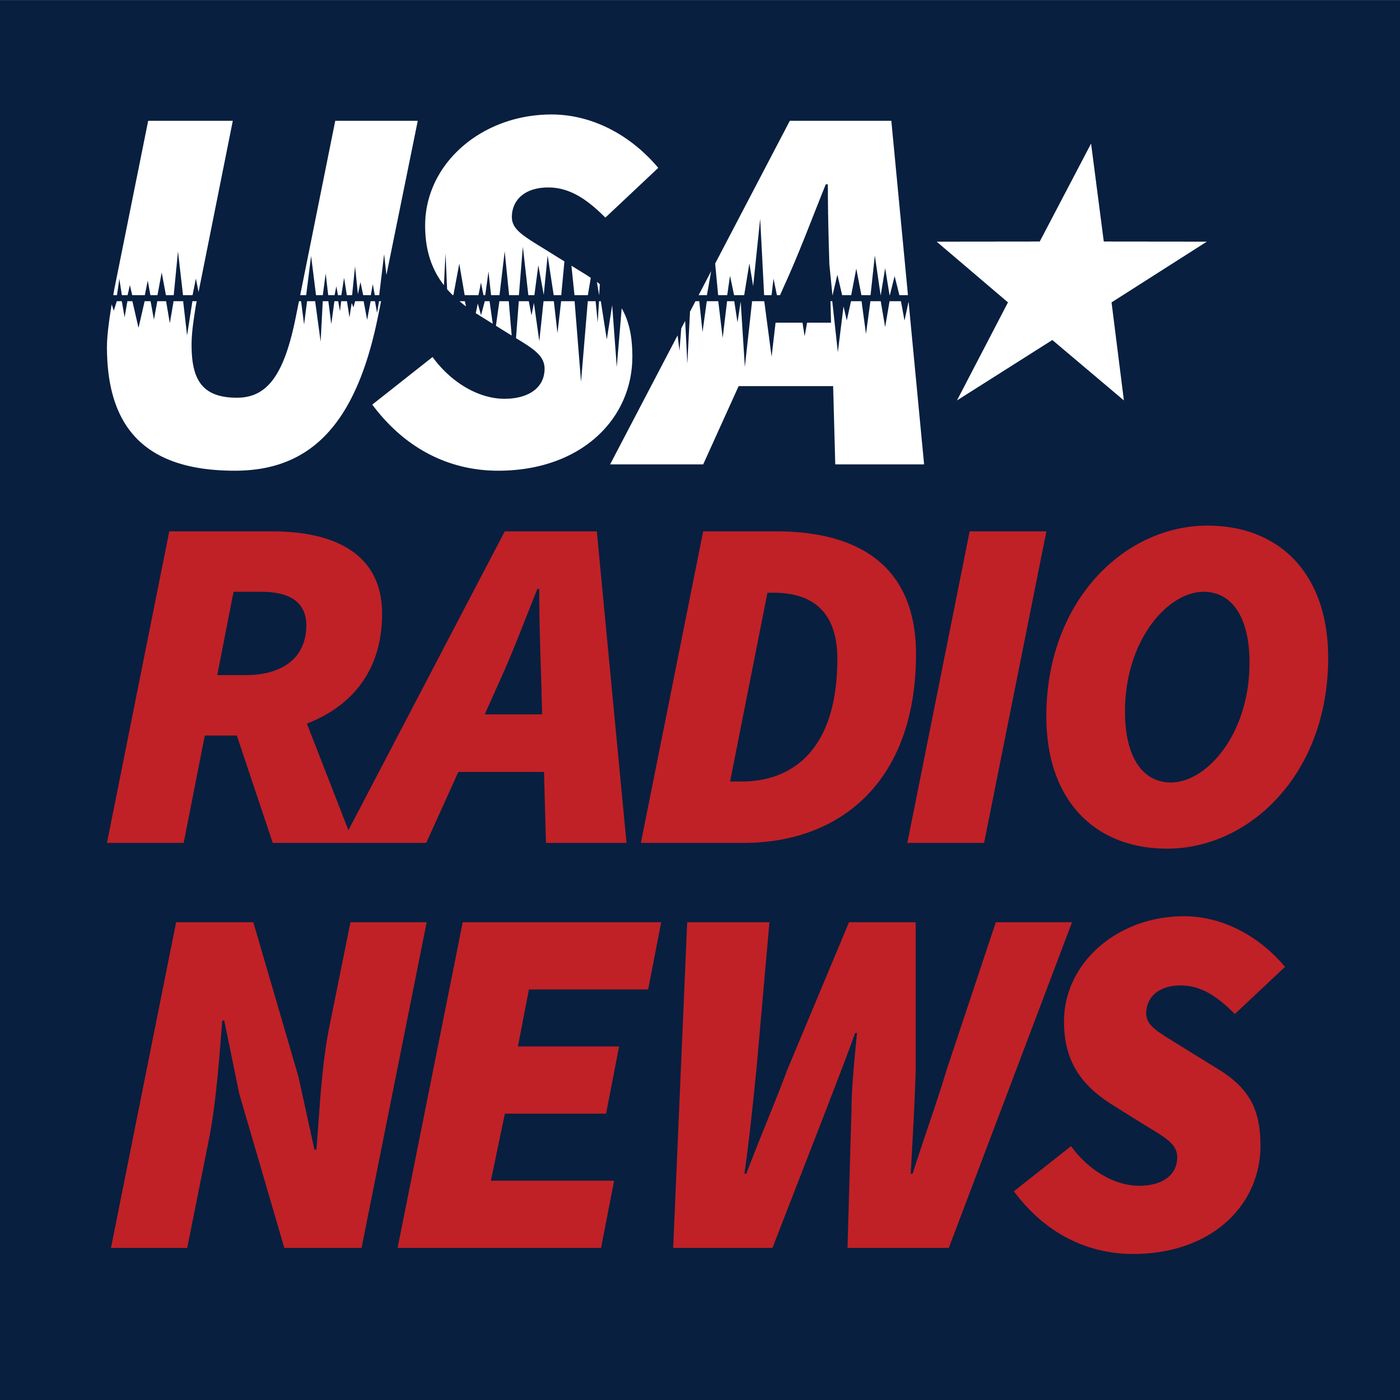 USA Radio News 011522 Hour 19